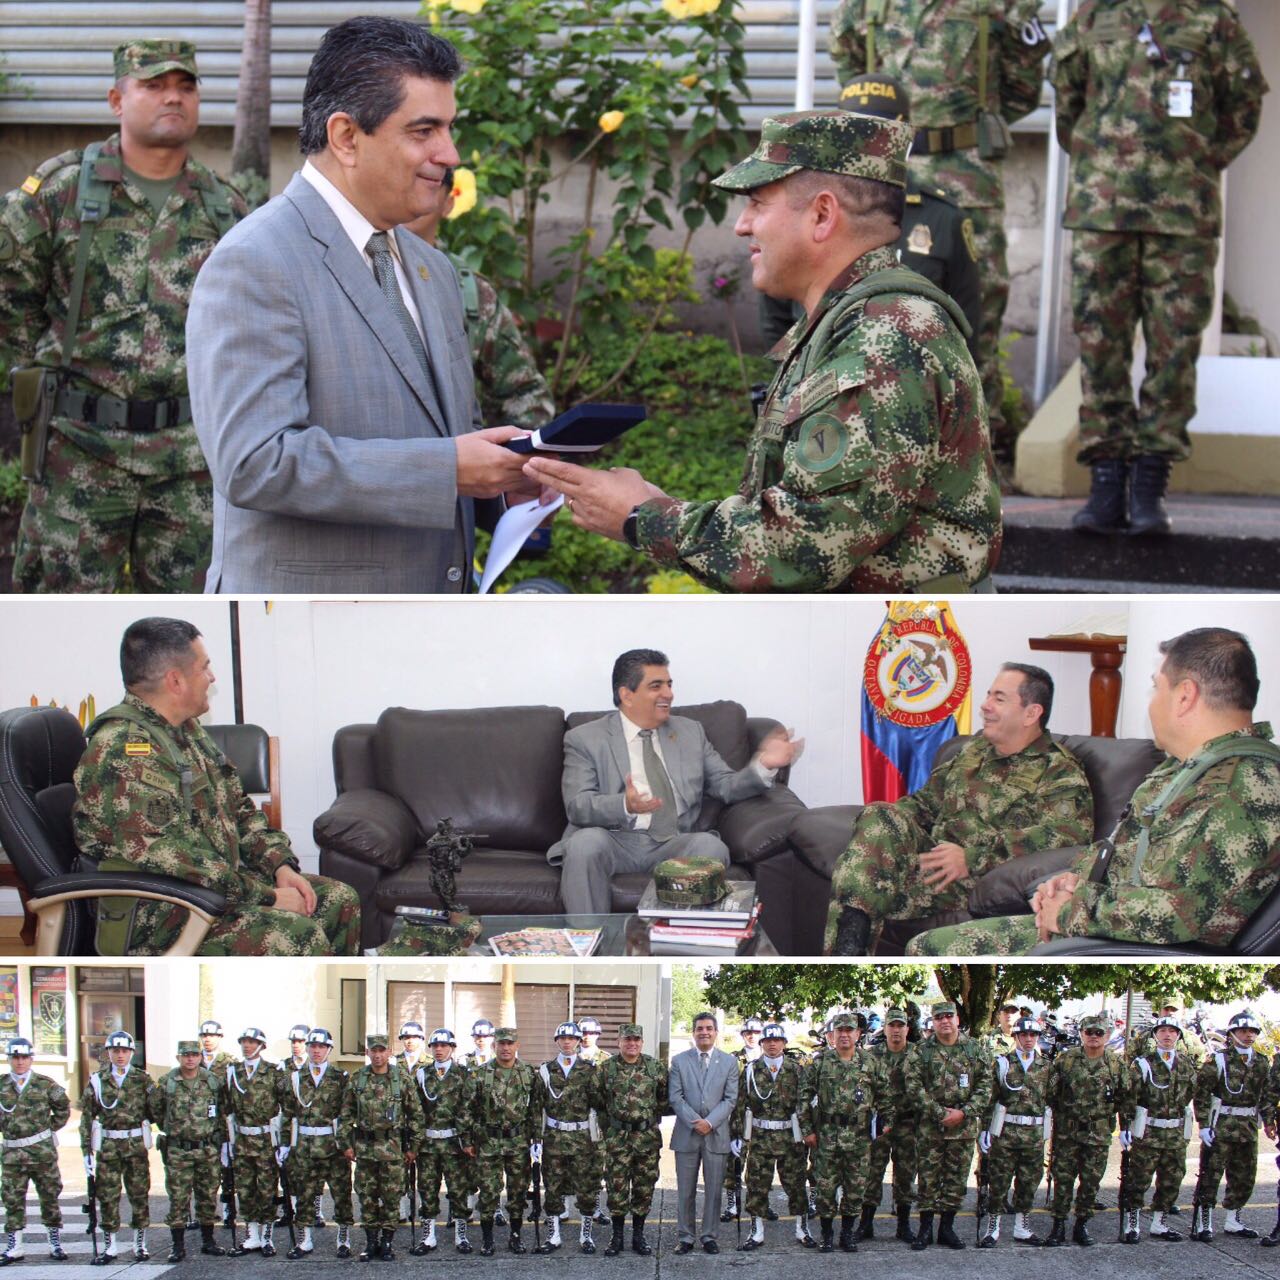 Ejército Nacional condecoró al gobernador por su apoyo incondicional a la seguridad de la región